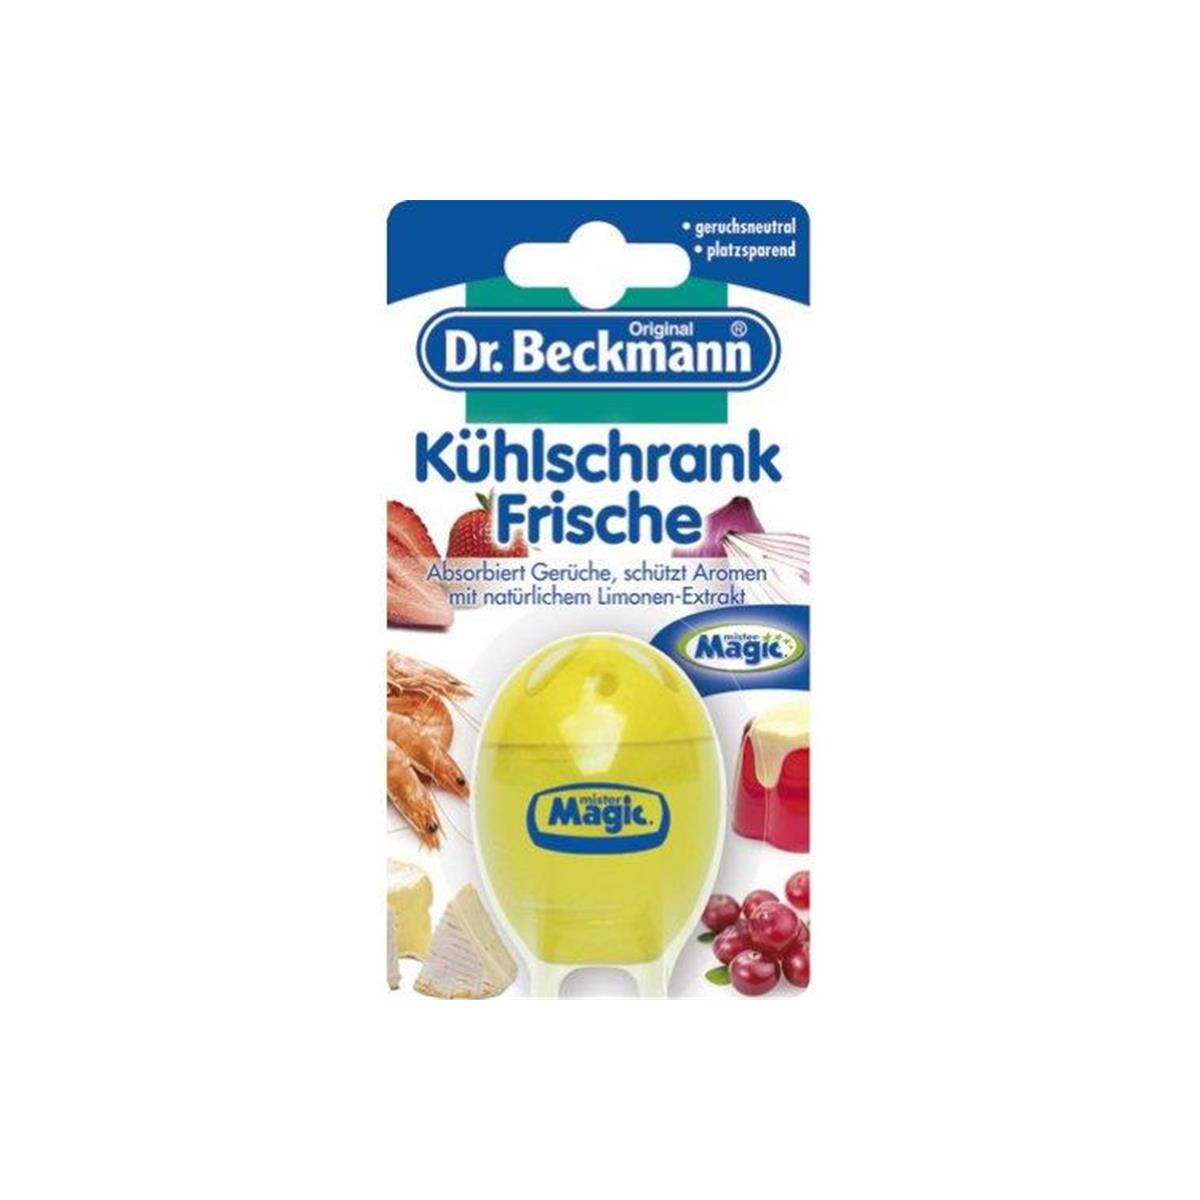 Dr. Beckmann Khlschrank Frische Soda 40 ml